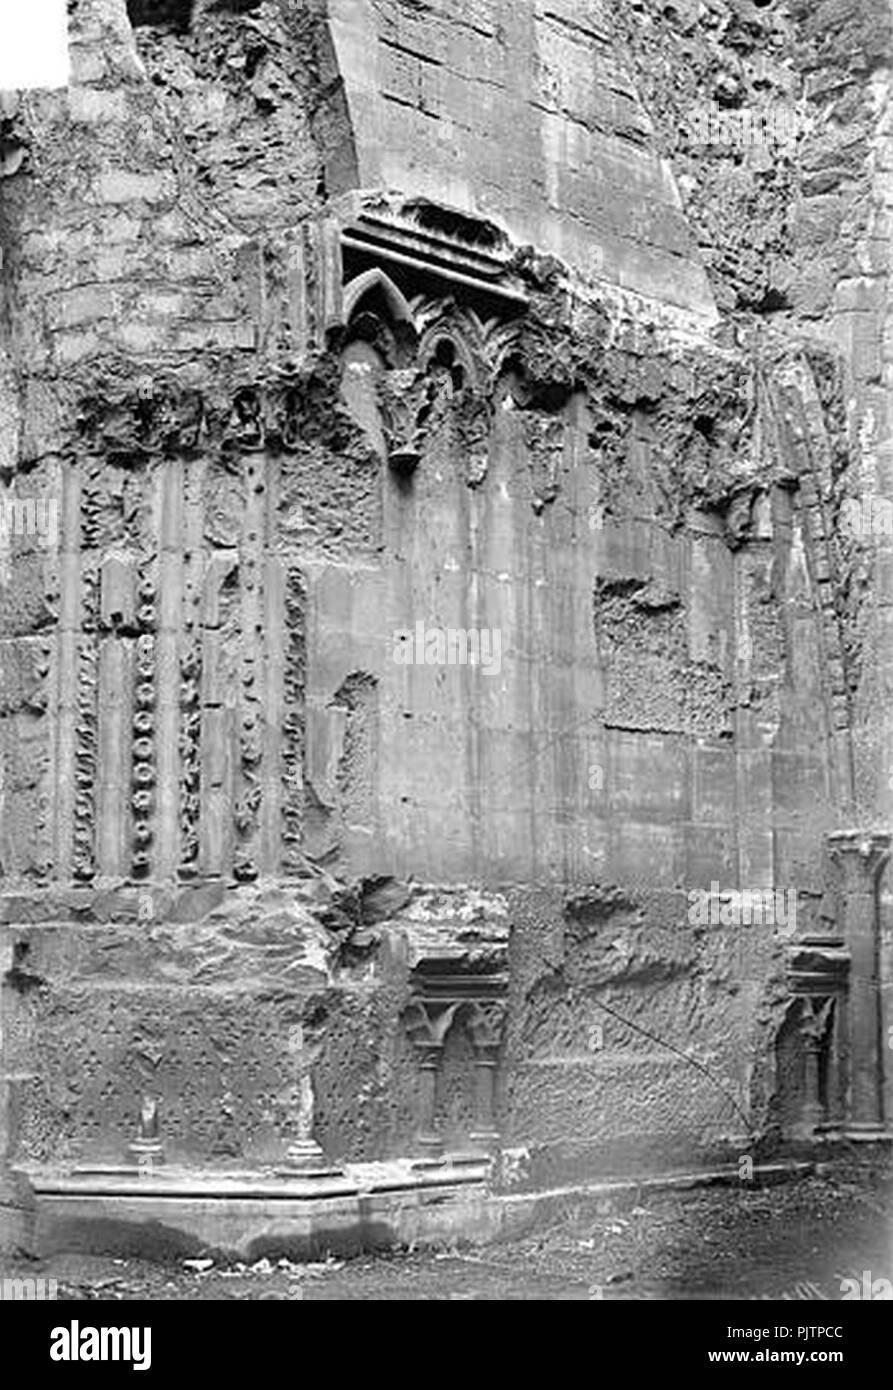 Basilique Saint-Denis - Portail du transept sud Ebrasement droit - Saint-Denis - Médiathèque de l'architecture et du patrimoine - APMH00016243. Stock Photo